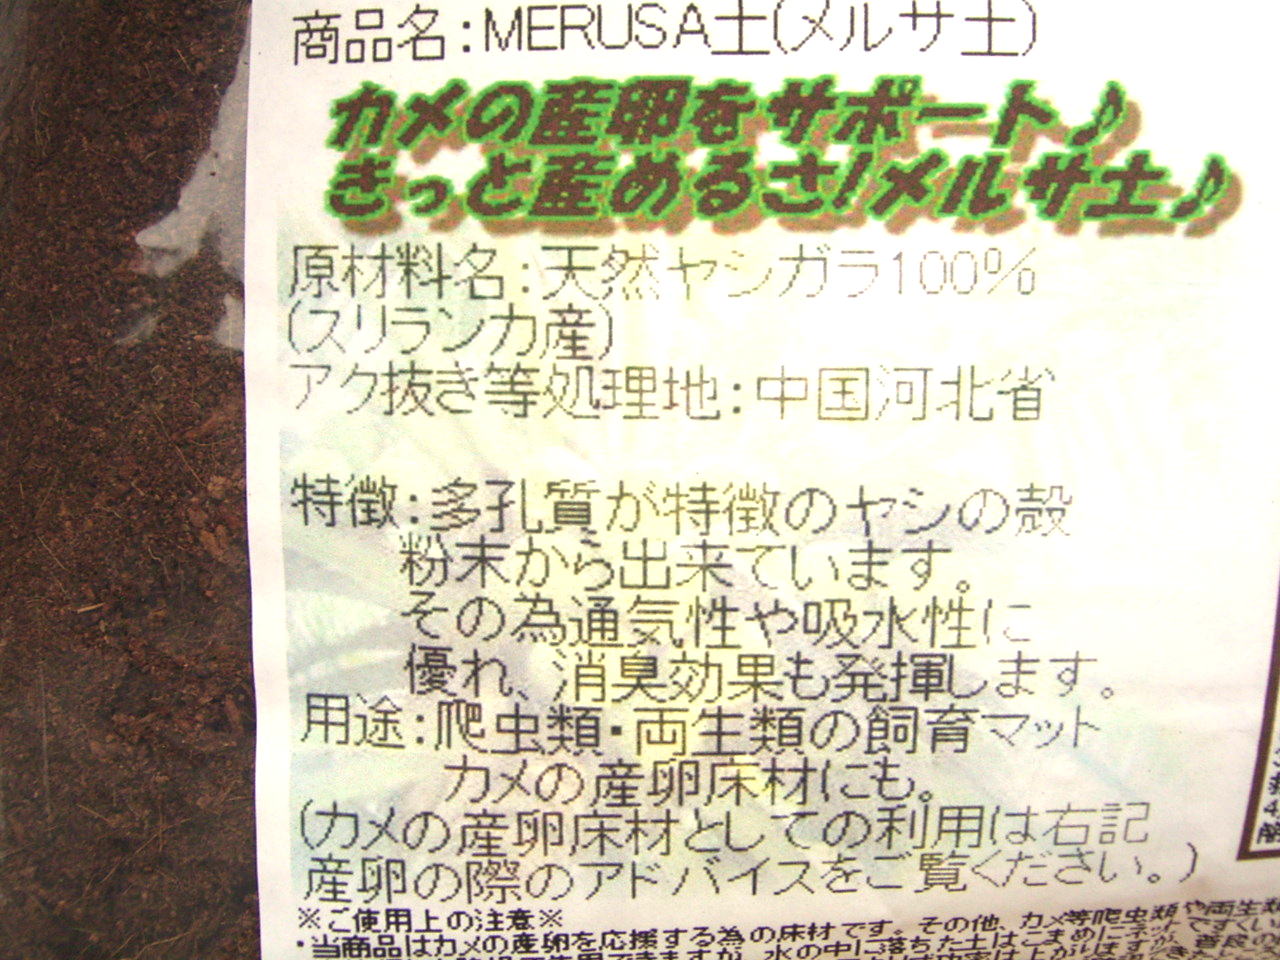 商品名:MERUSA(メルサ土)　カメの産卵をサポート♪きっと産めるさメルサ土♪スリランカ製のヤシガラ製。